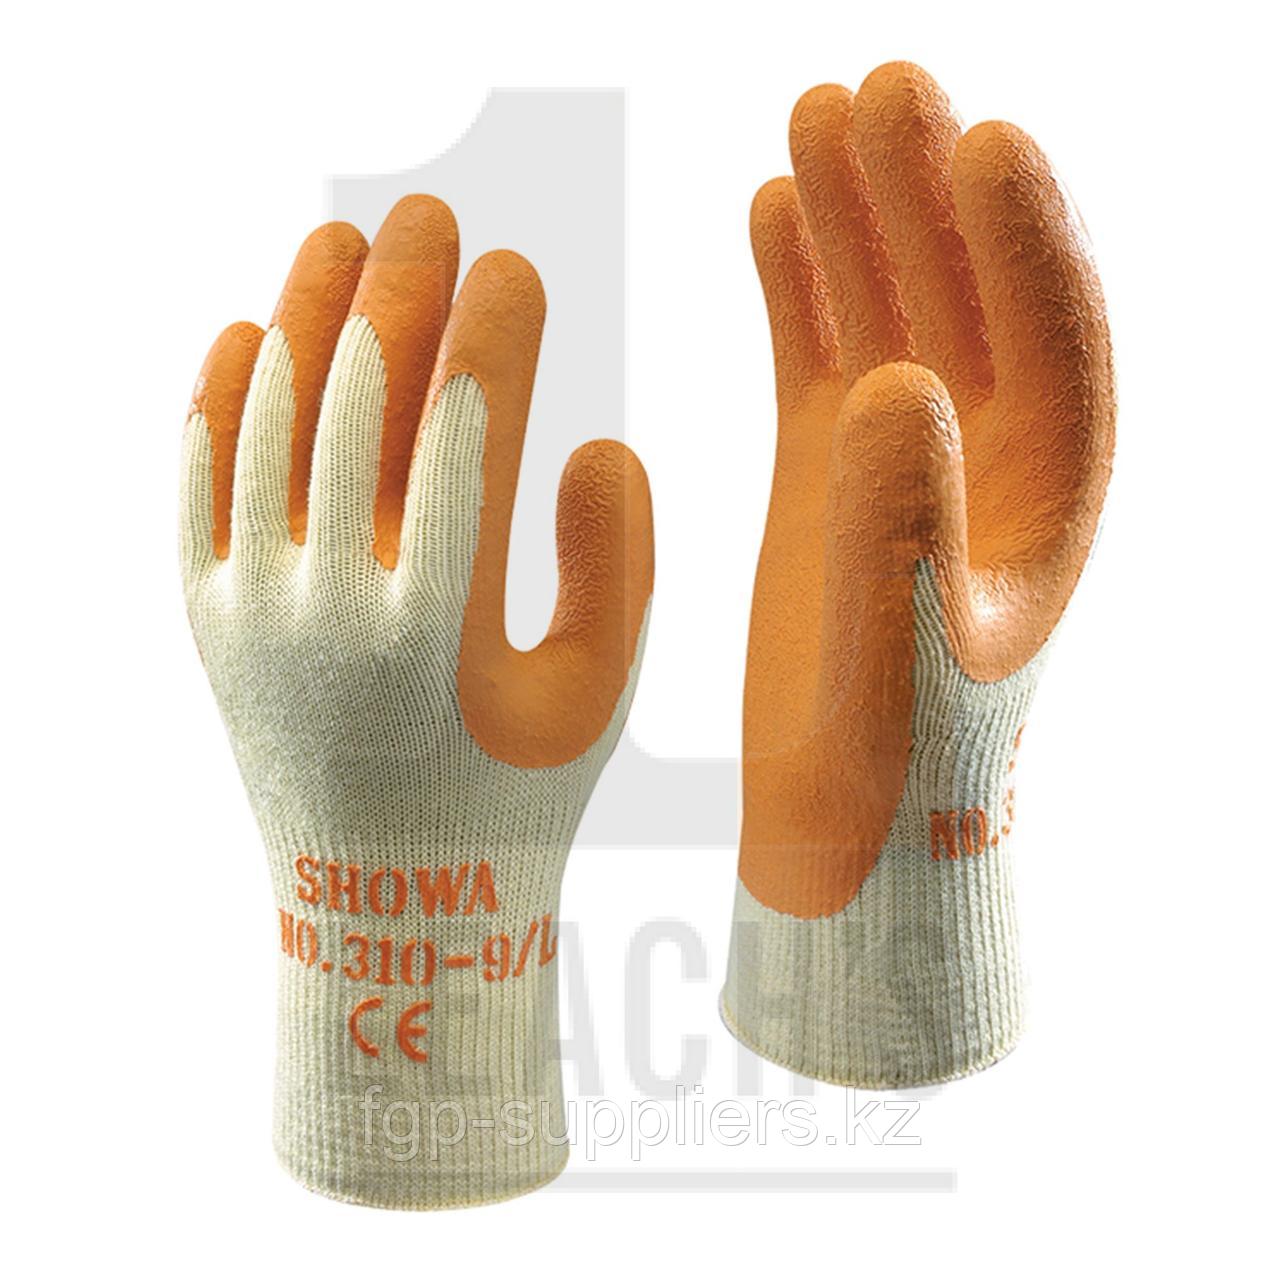 Showa Orange Scaffolders Gloves / Showa Оранжевые монтажные перчатки